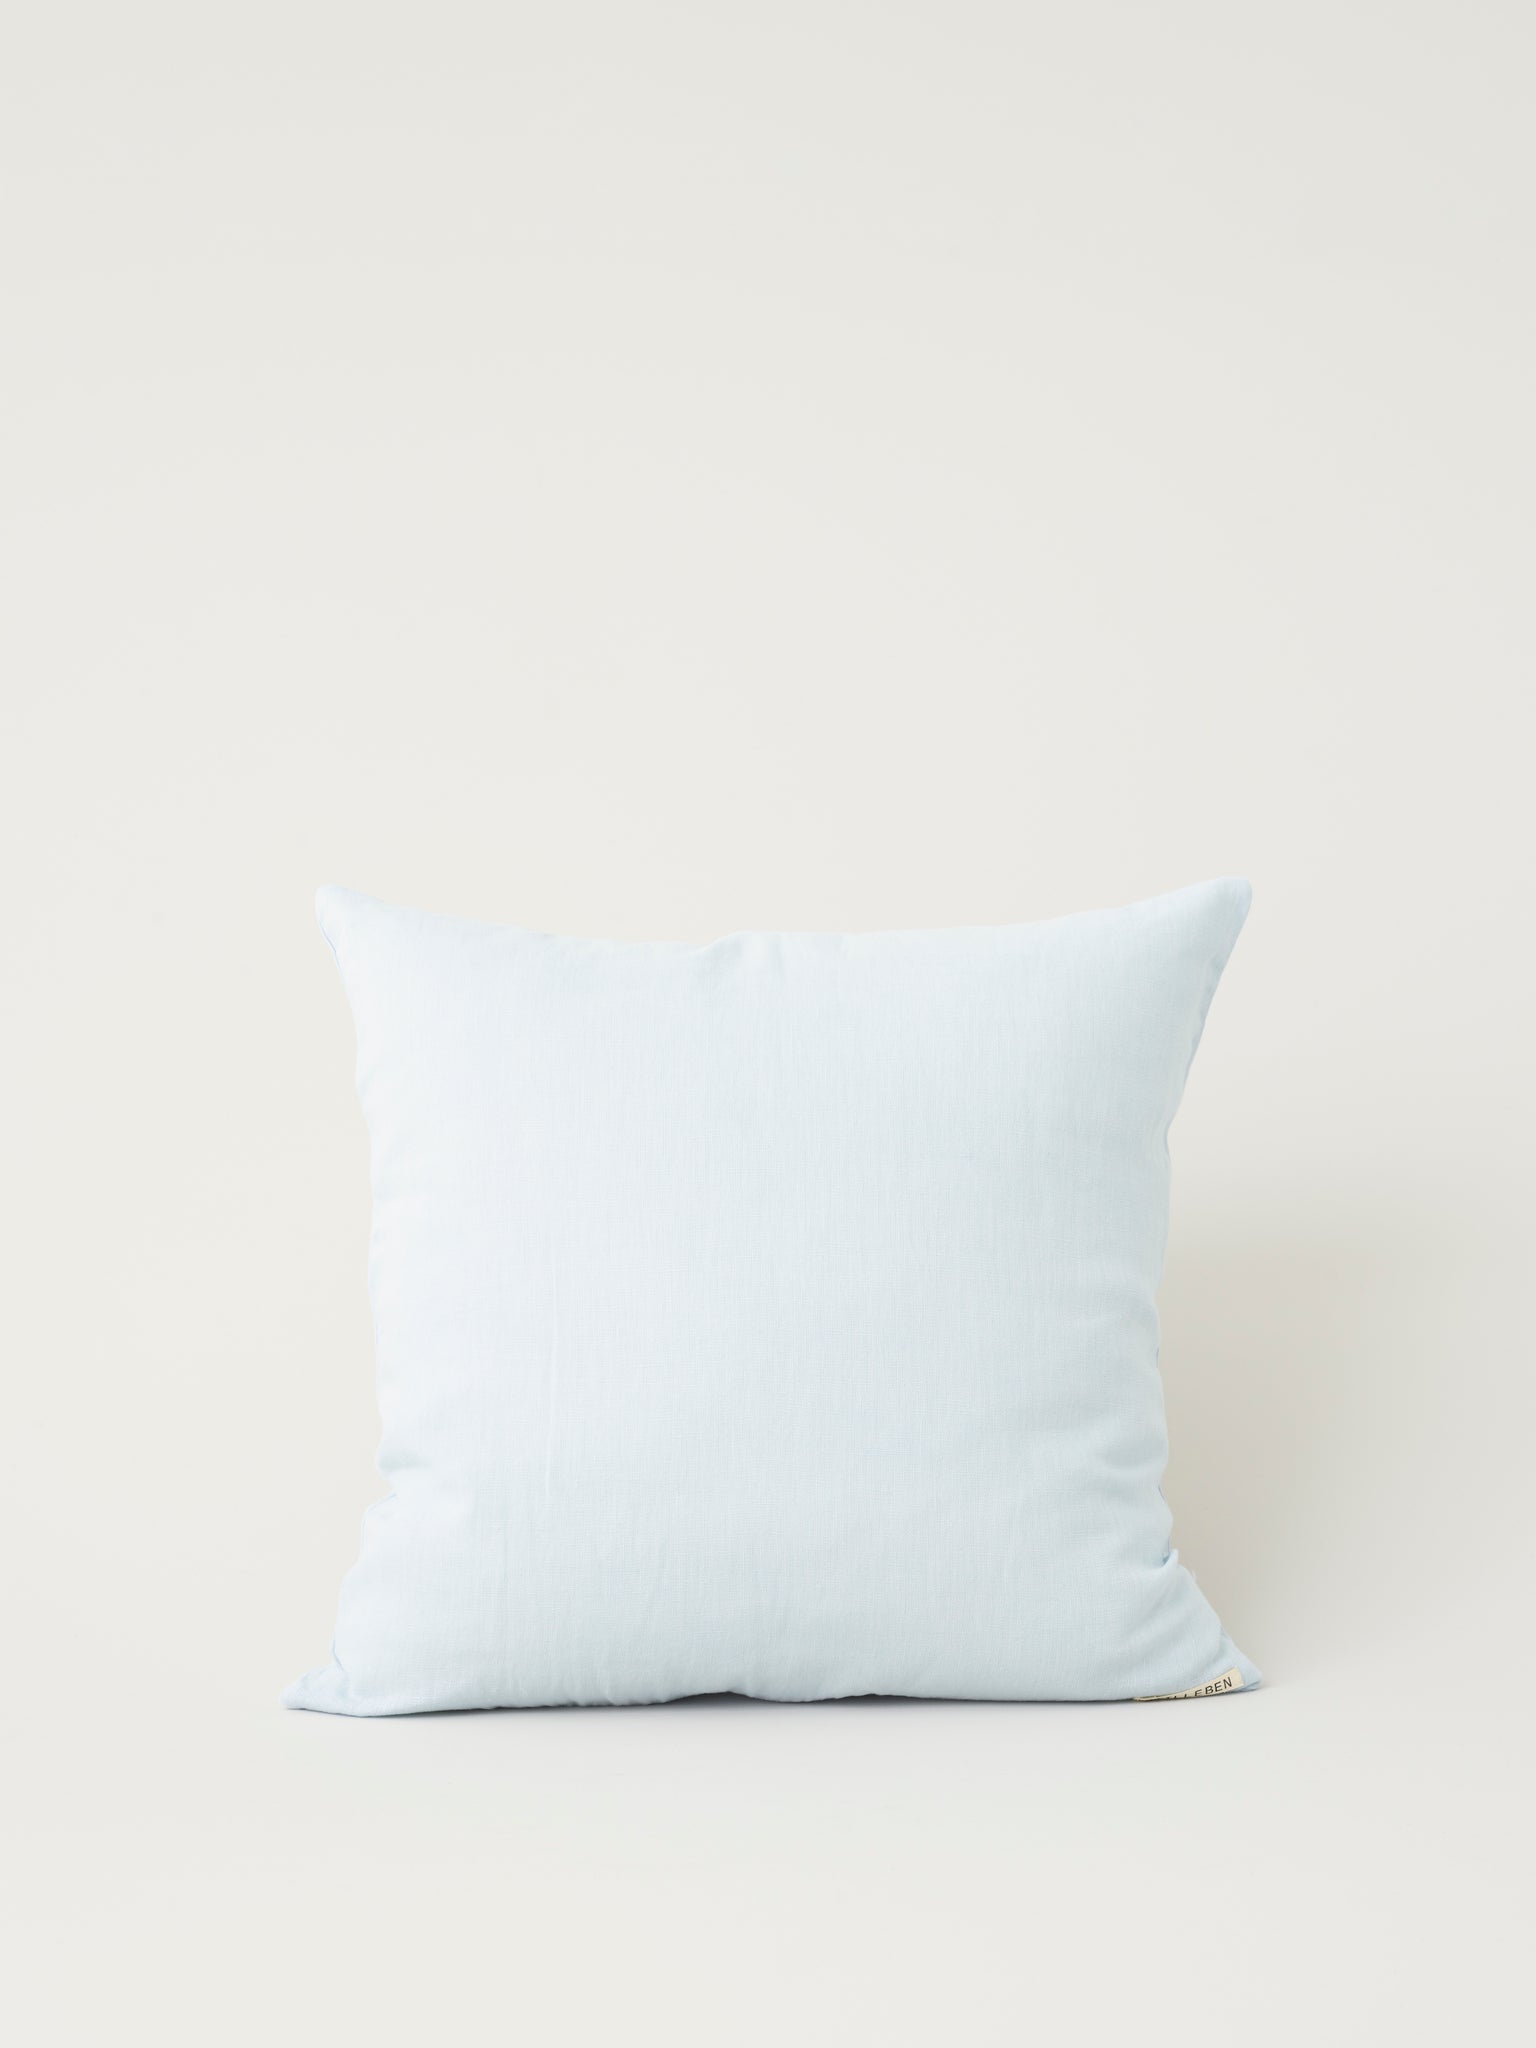 Stilleben Cushion Cover - 50 x 50 cm Cushion Cover Blue Fog